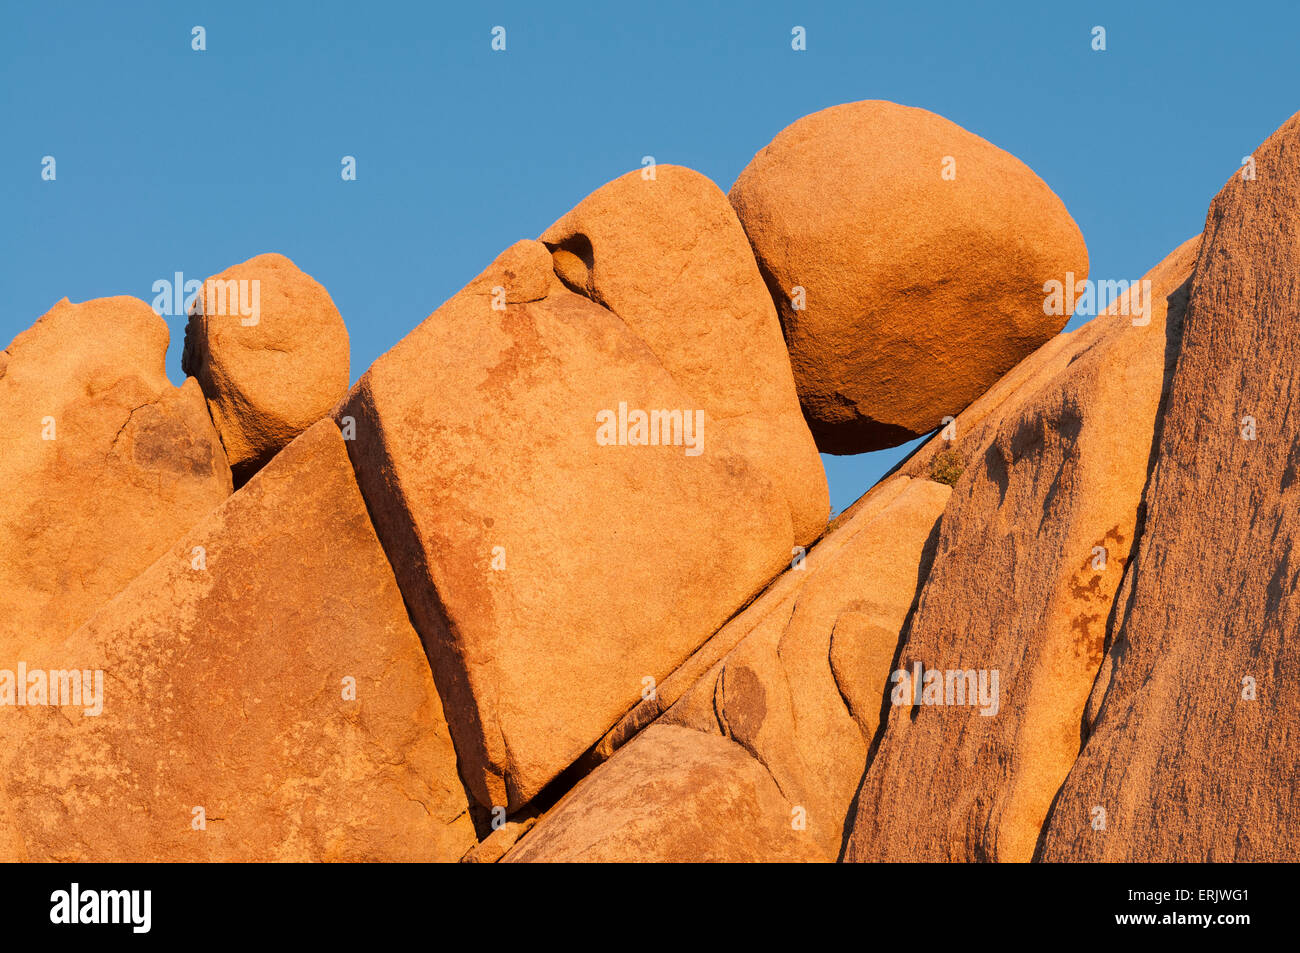 Rock formations at Jumbo Rocks area of Joshua Tree National Park, California. Stock Photo